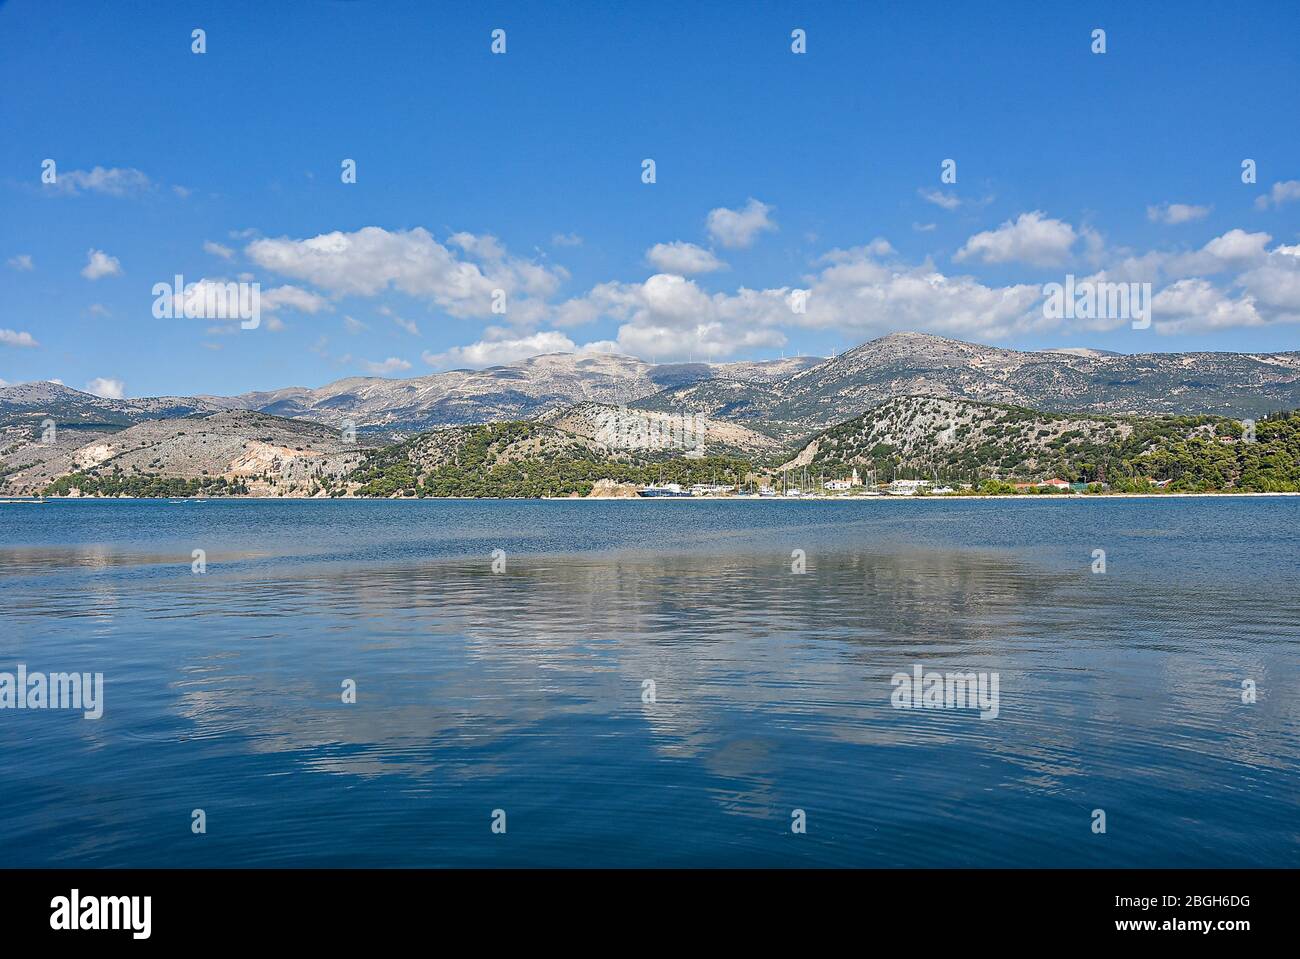 Una vista su una bella vista da Argostoli, con montagne sullo sfondo riflesse nel mare Foto Stock